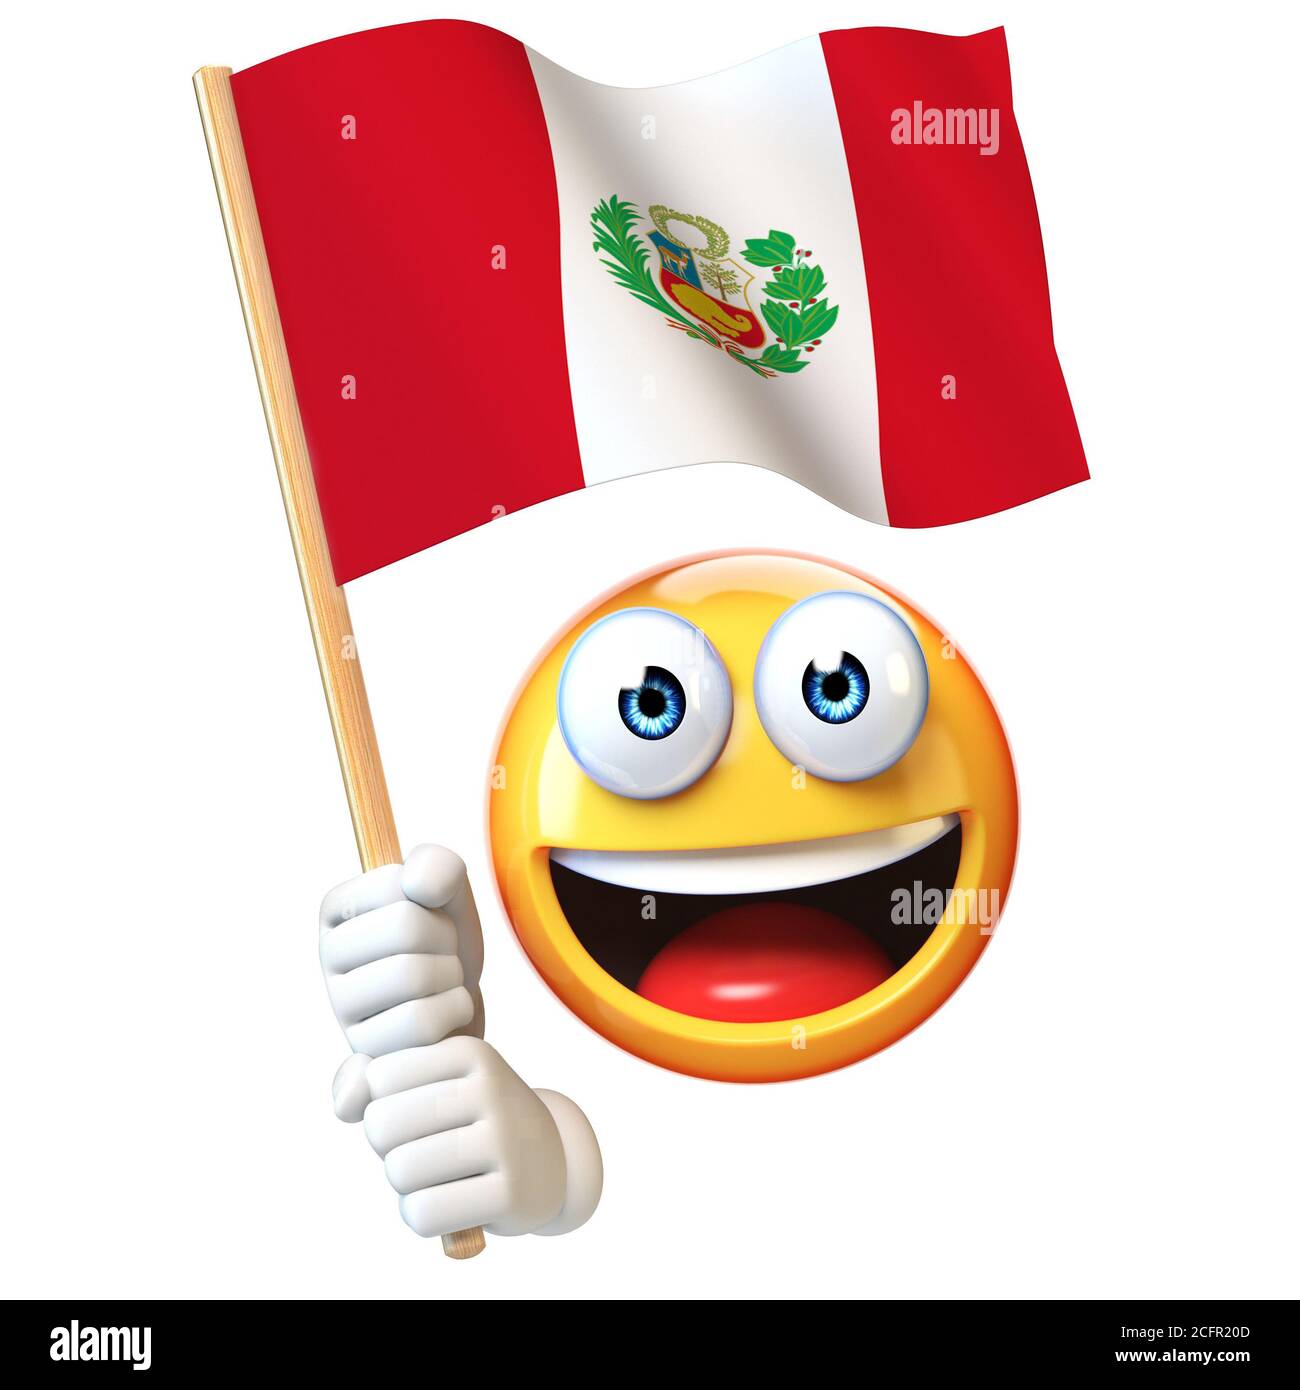 Emoji tenant le drapeau péruvien, émoticone agitant le drapeau national du Pérou rendu 3d Banque D'Images